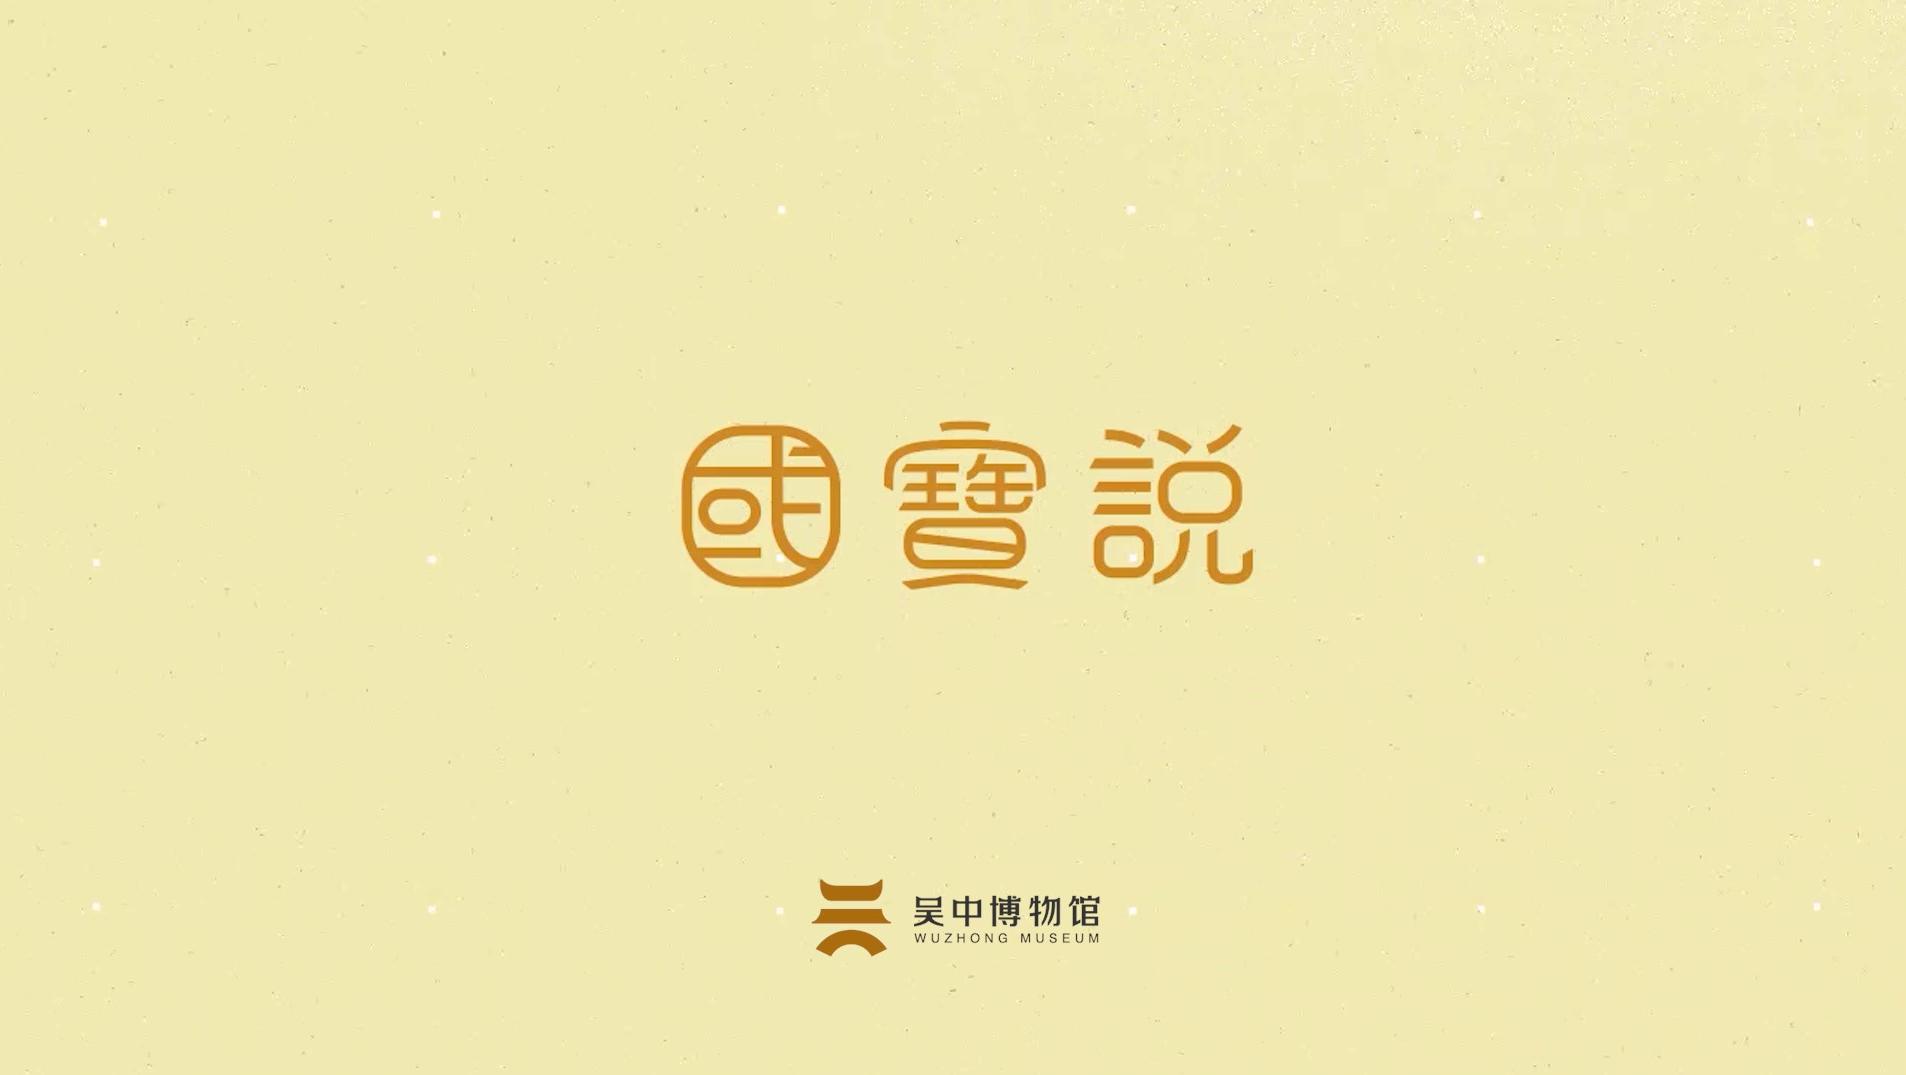 吴文化博物馆“国宝说”第4期——鹦鹉首拱形玉饰